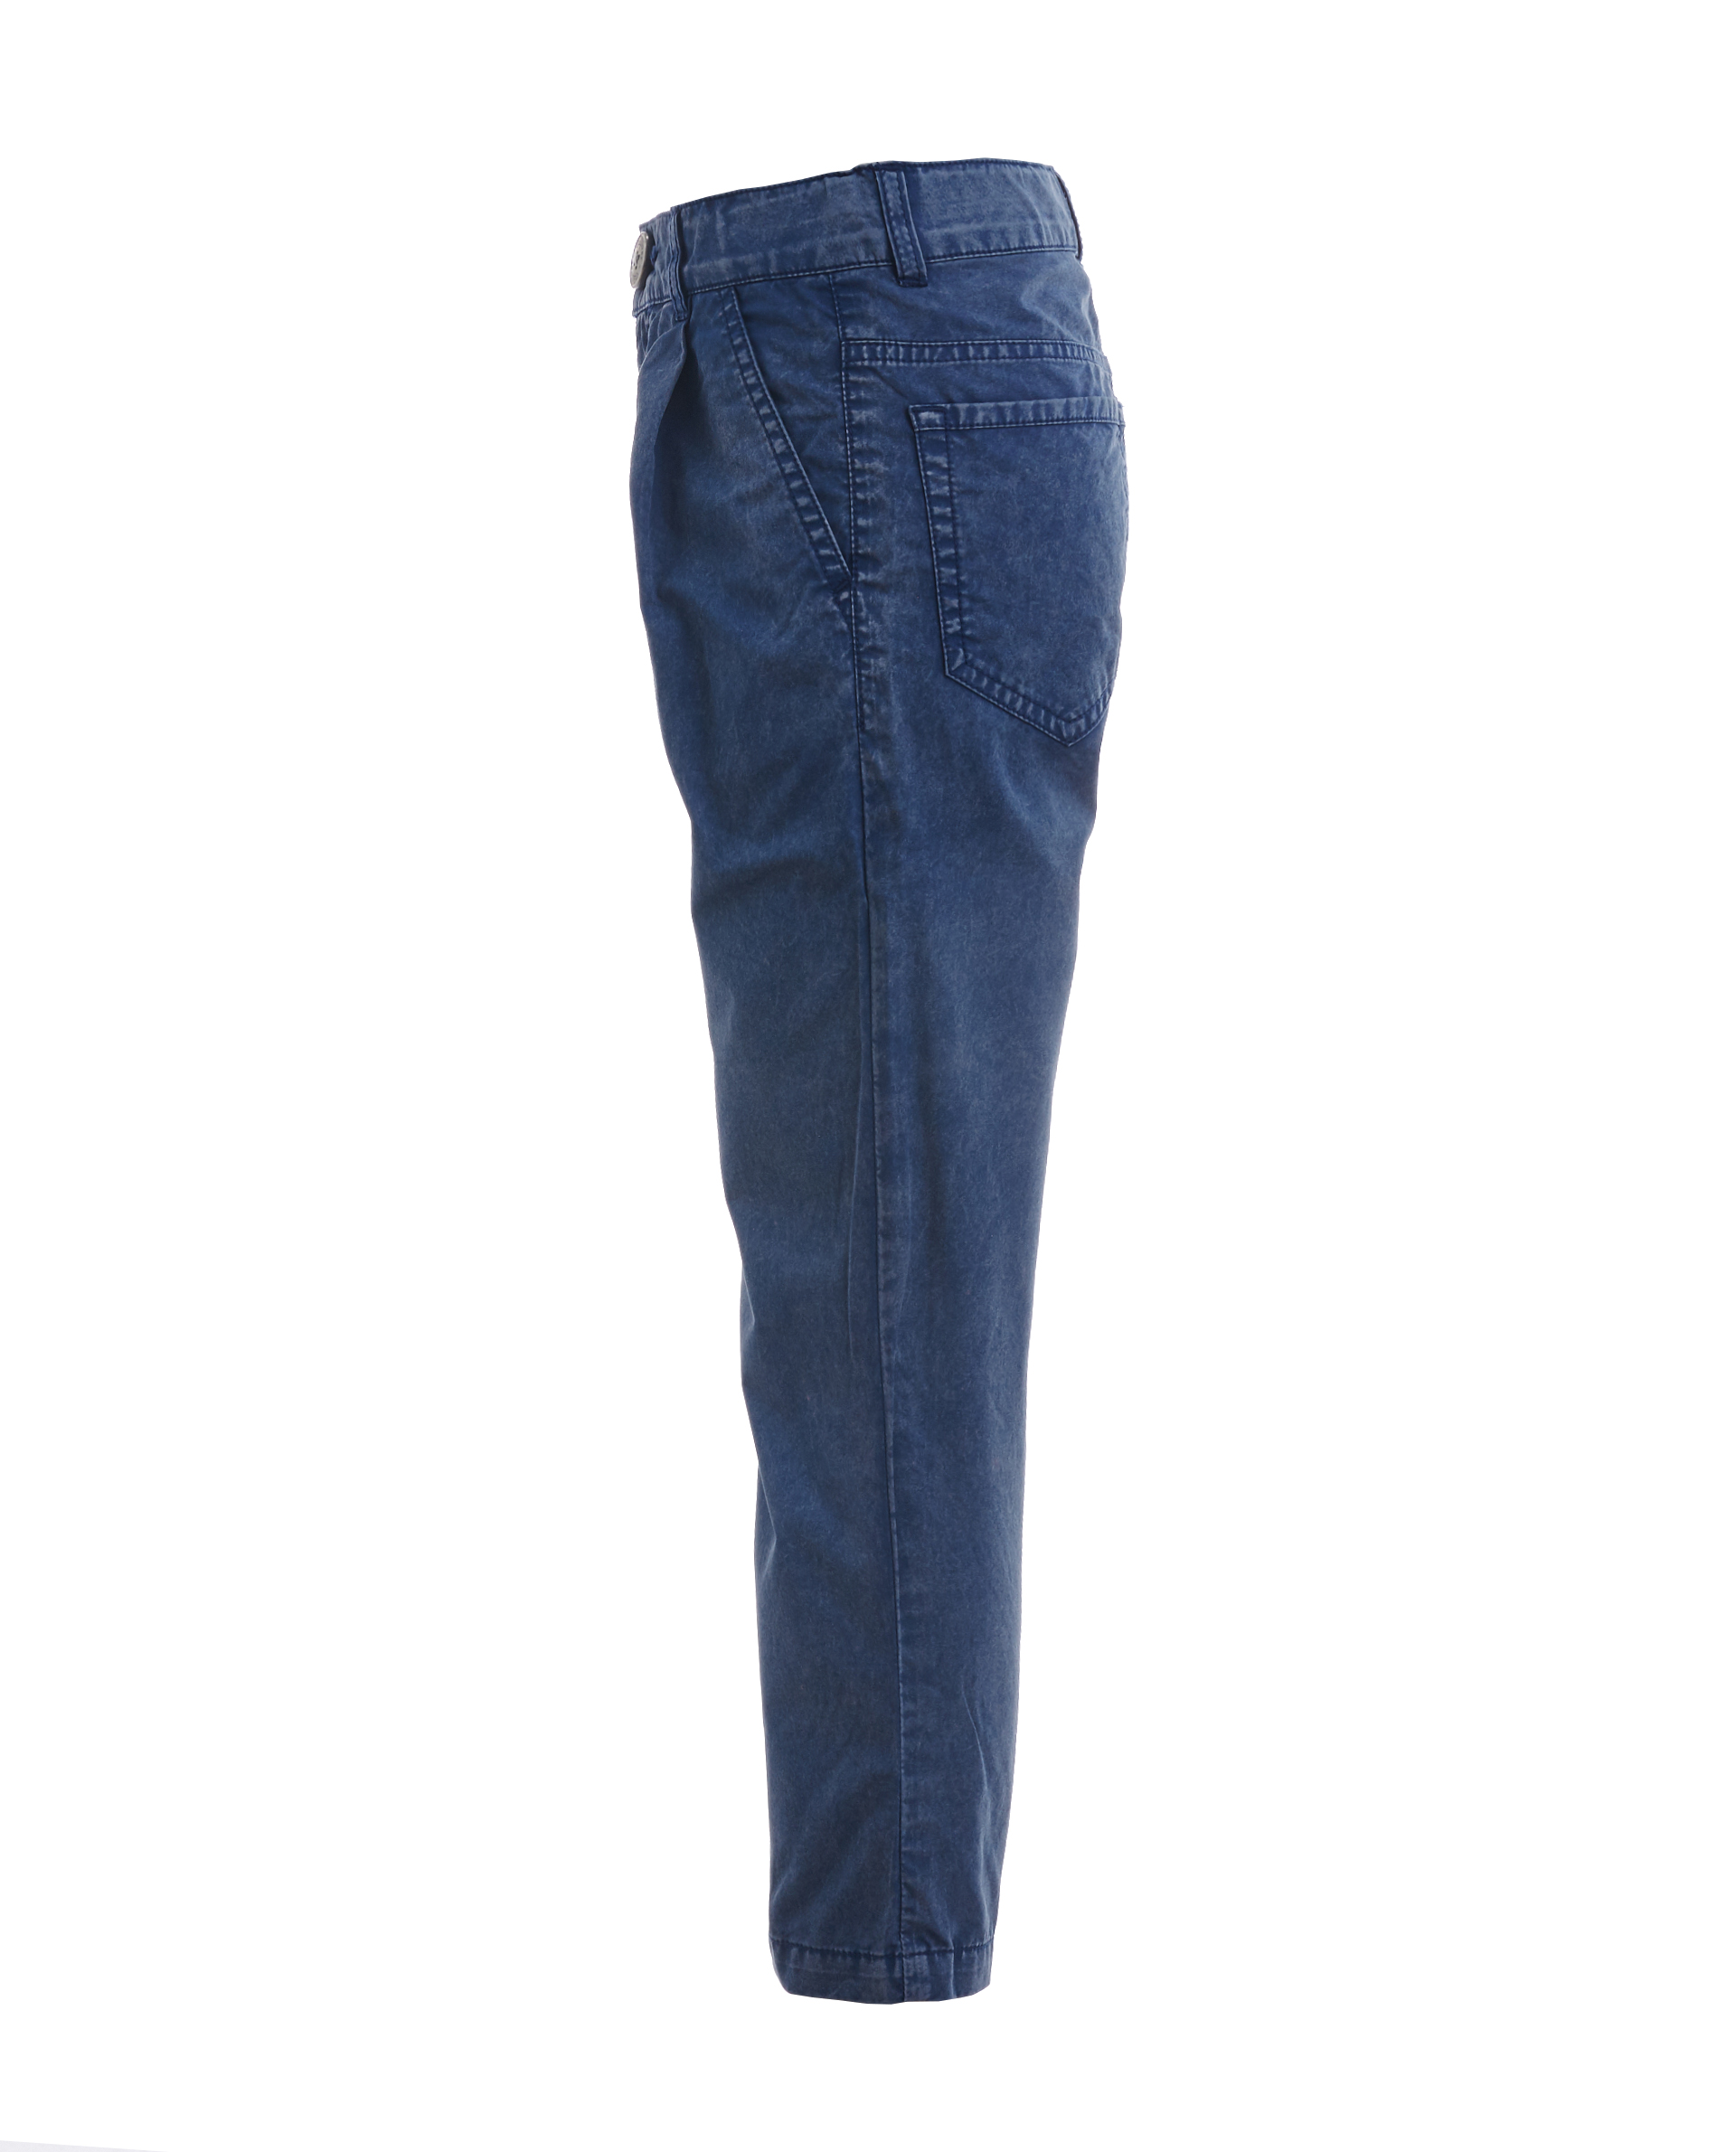 Синие брюки с винтажным эффектом Gulliver 11906BMC6305, размер 116, цвет синий - фото 3